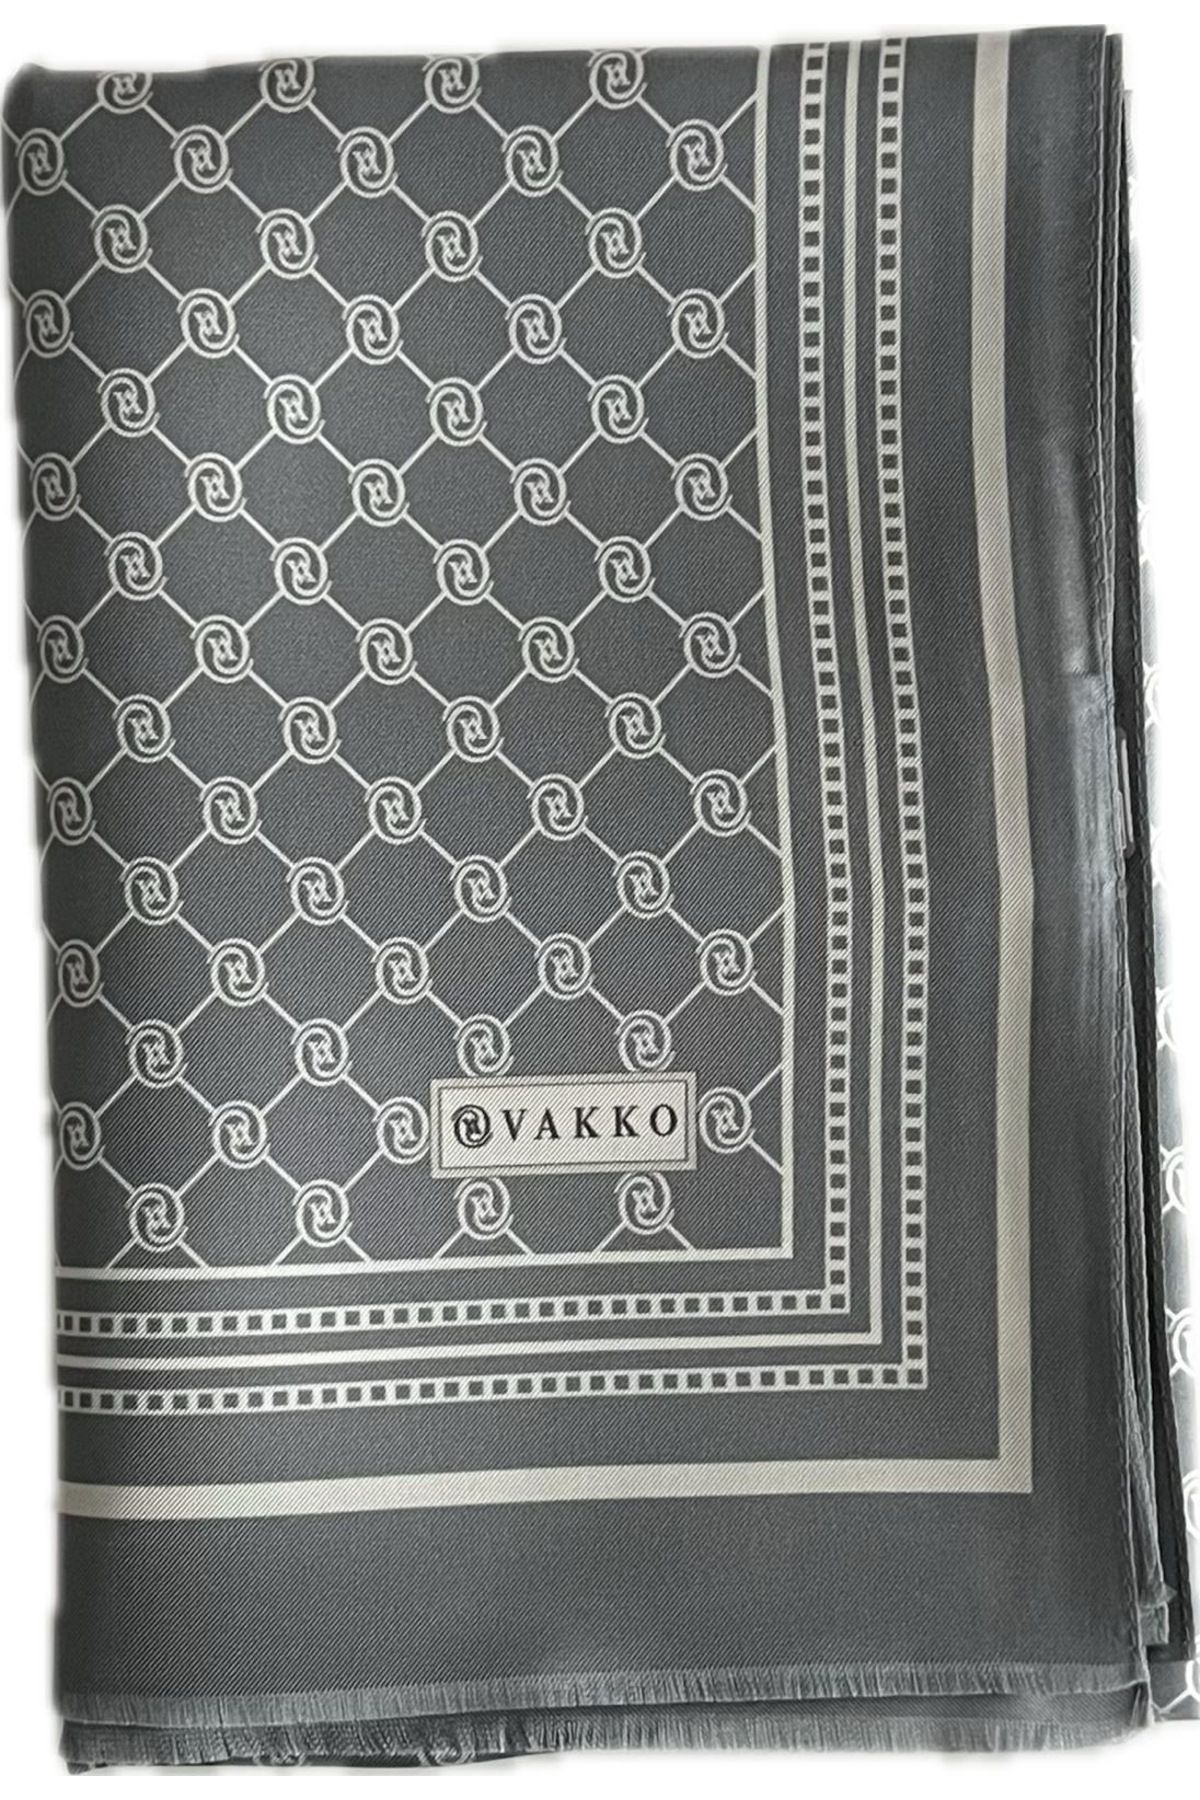 Vakko Monogram İpek Tivil Şal Gri-Beyaz Özel Seri 300088